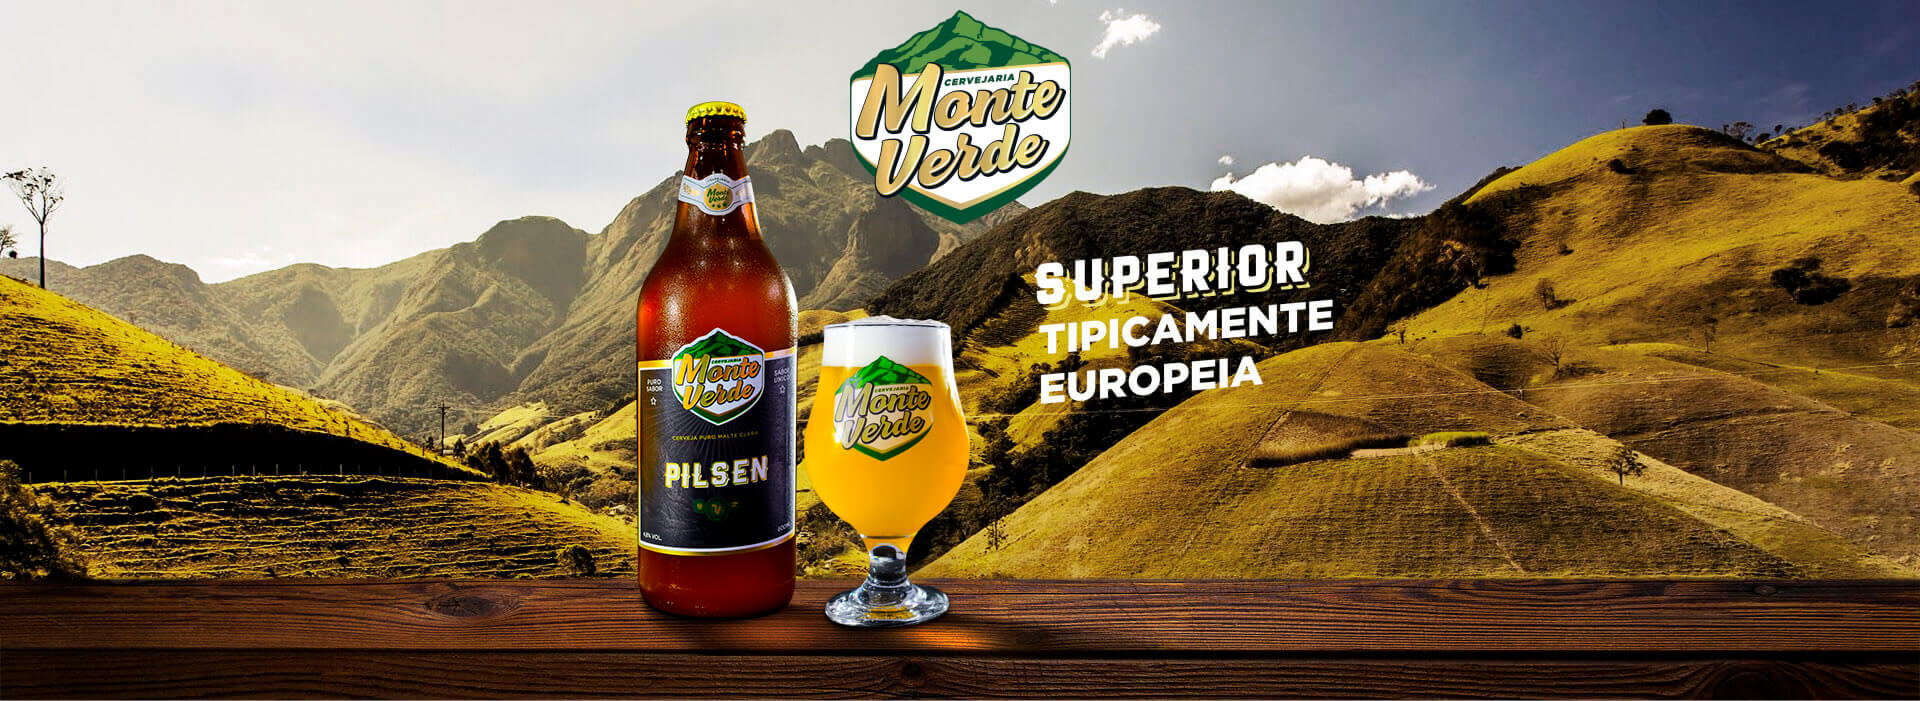 Cerveja Pilsen - Monte Verde - Tipicamente Europeia